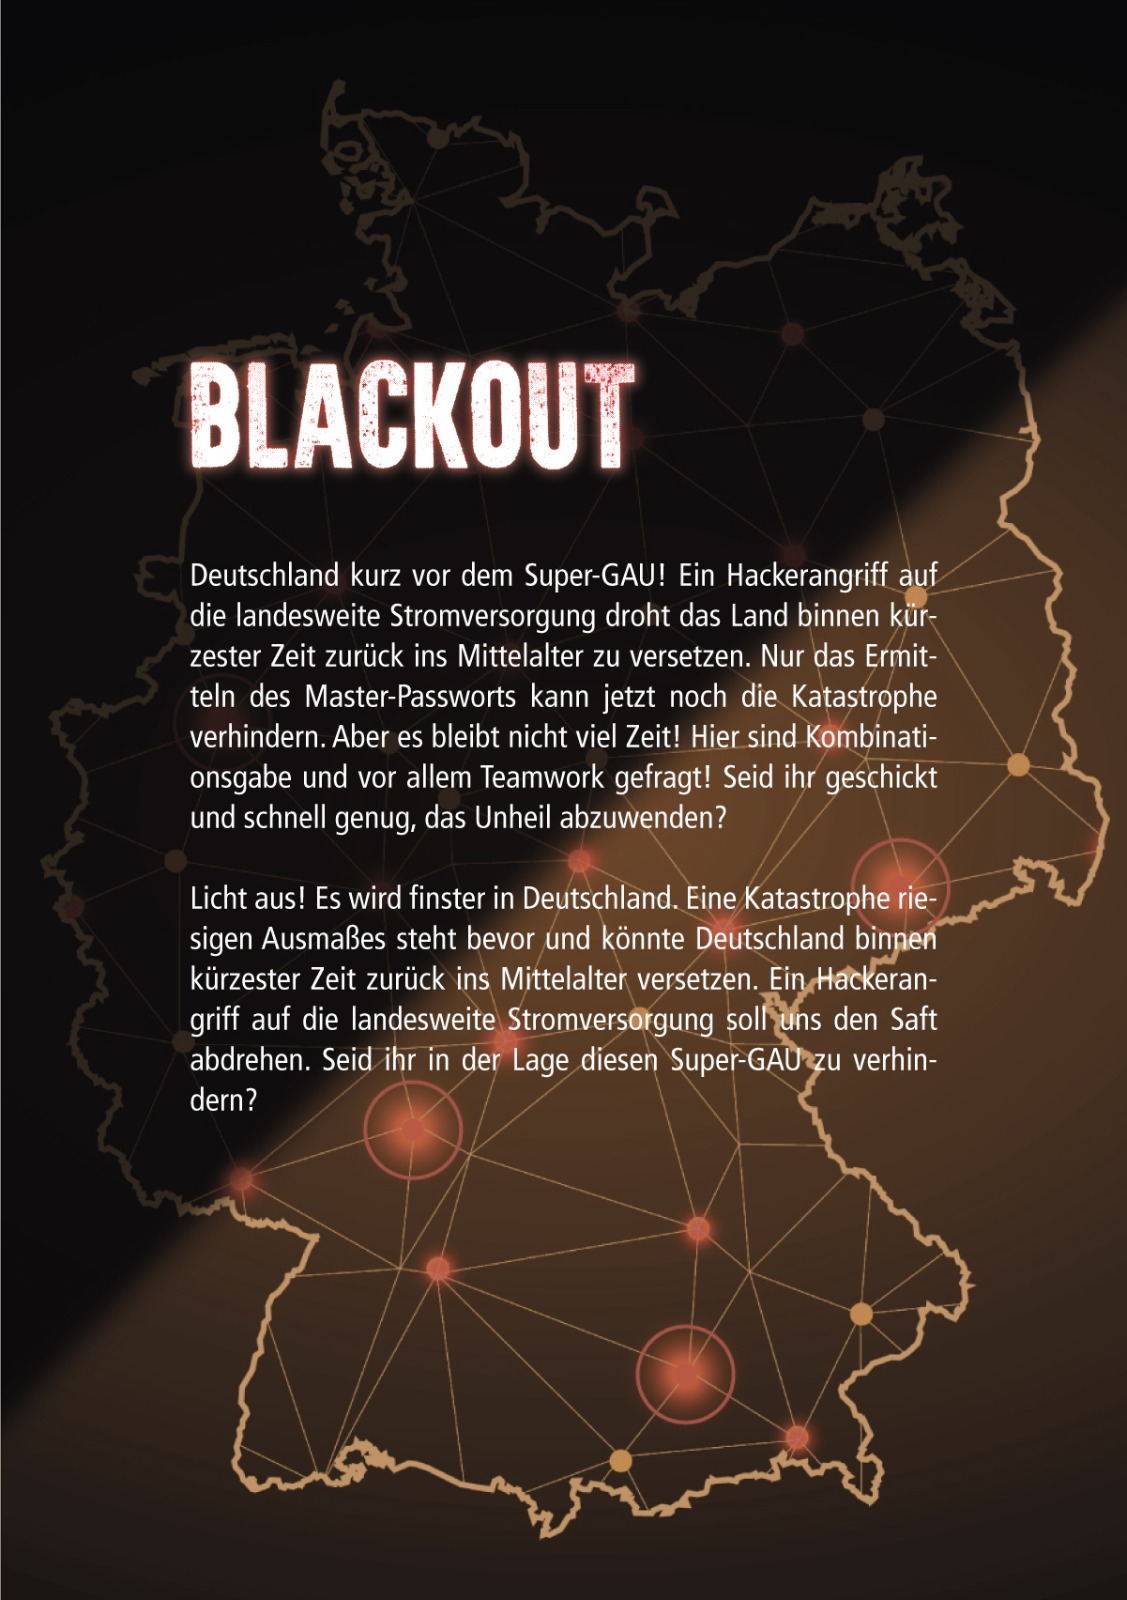 Blackout-Beschreibung